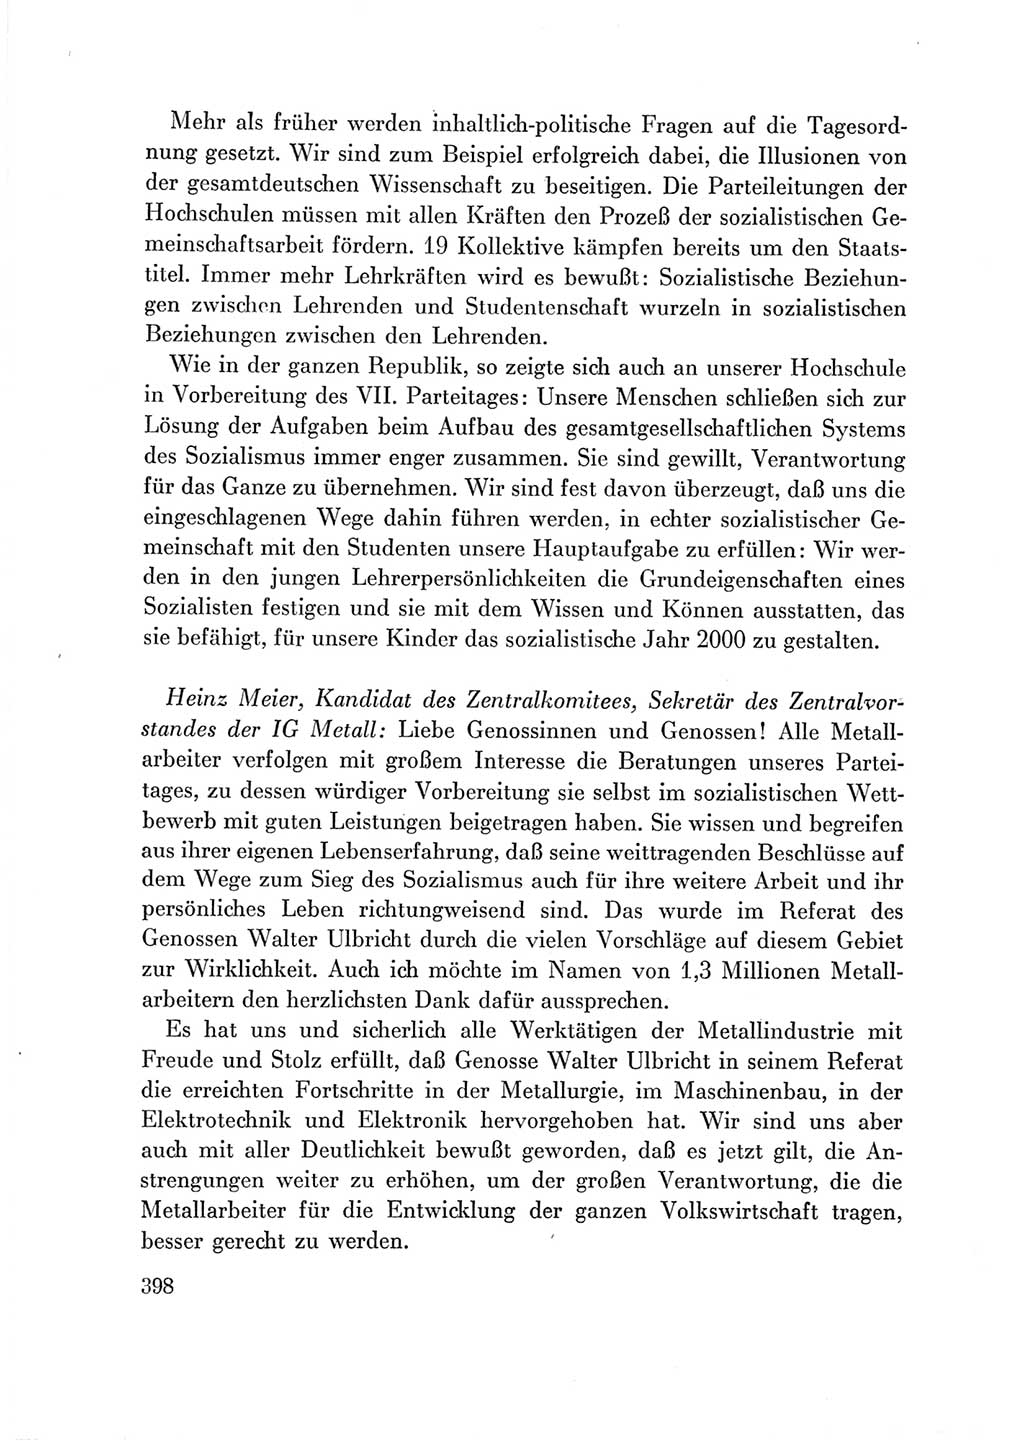 Protokoll der Verhandlungen des Ⅶ. Parteitages der Sozialistischen Einheitspartei Deutschlands (SED) [Deutsche Demokratische Republik (DDR)] 1967, Band Ⅲ, Seite 398 (Prot. Verh. Ⅶ. PT SED DDR 1967, Bd. Ⅲ, S. 398)